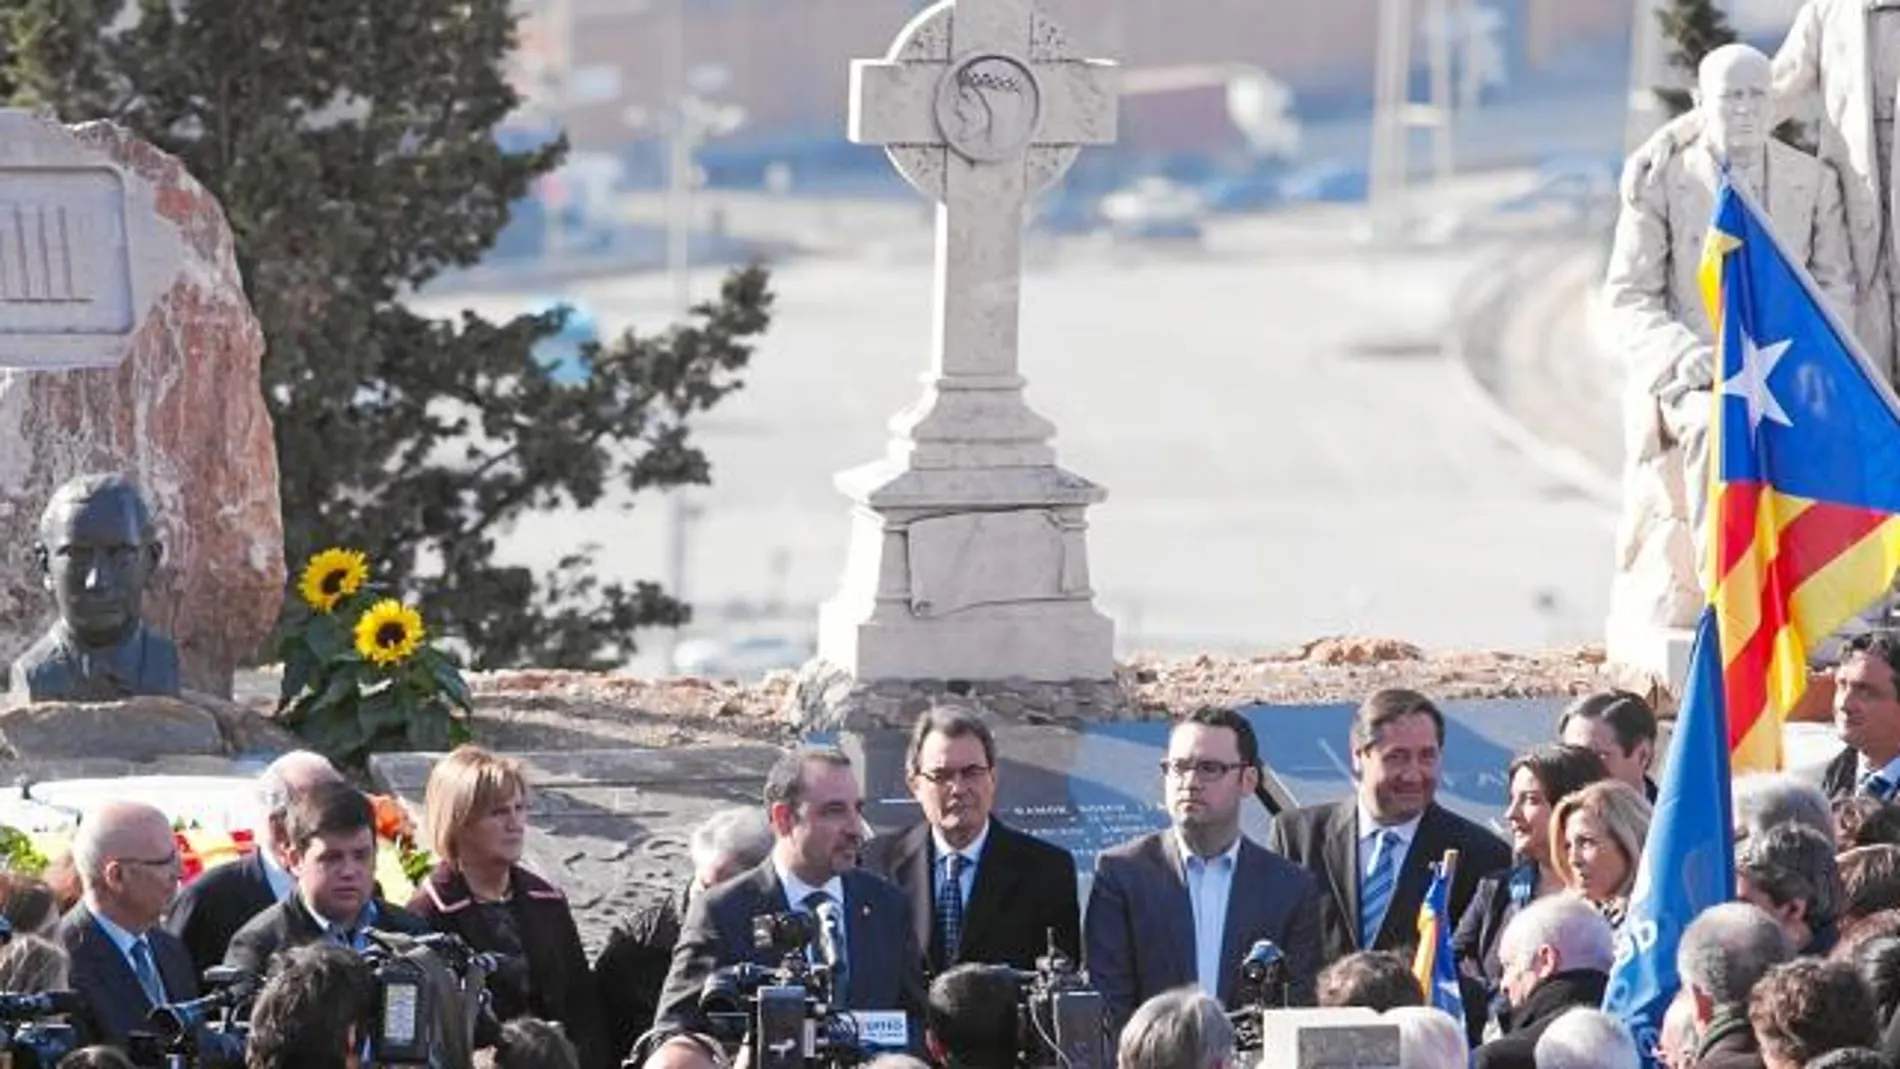 Mas pronunció ayer un discurso ante la tumba del político católico y catalanista Manuel Carrasco Formiguera, en un acto de homenaje de los 75 años de su fallecimiento celebrado ayer en el cementerio de Montjuïc